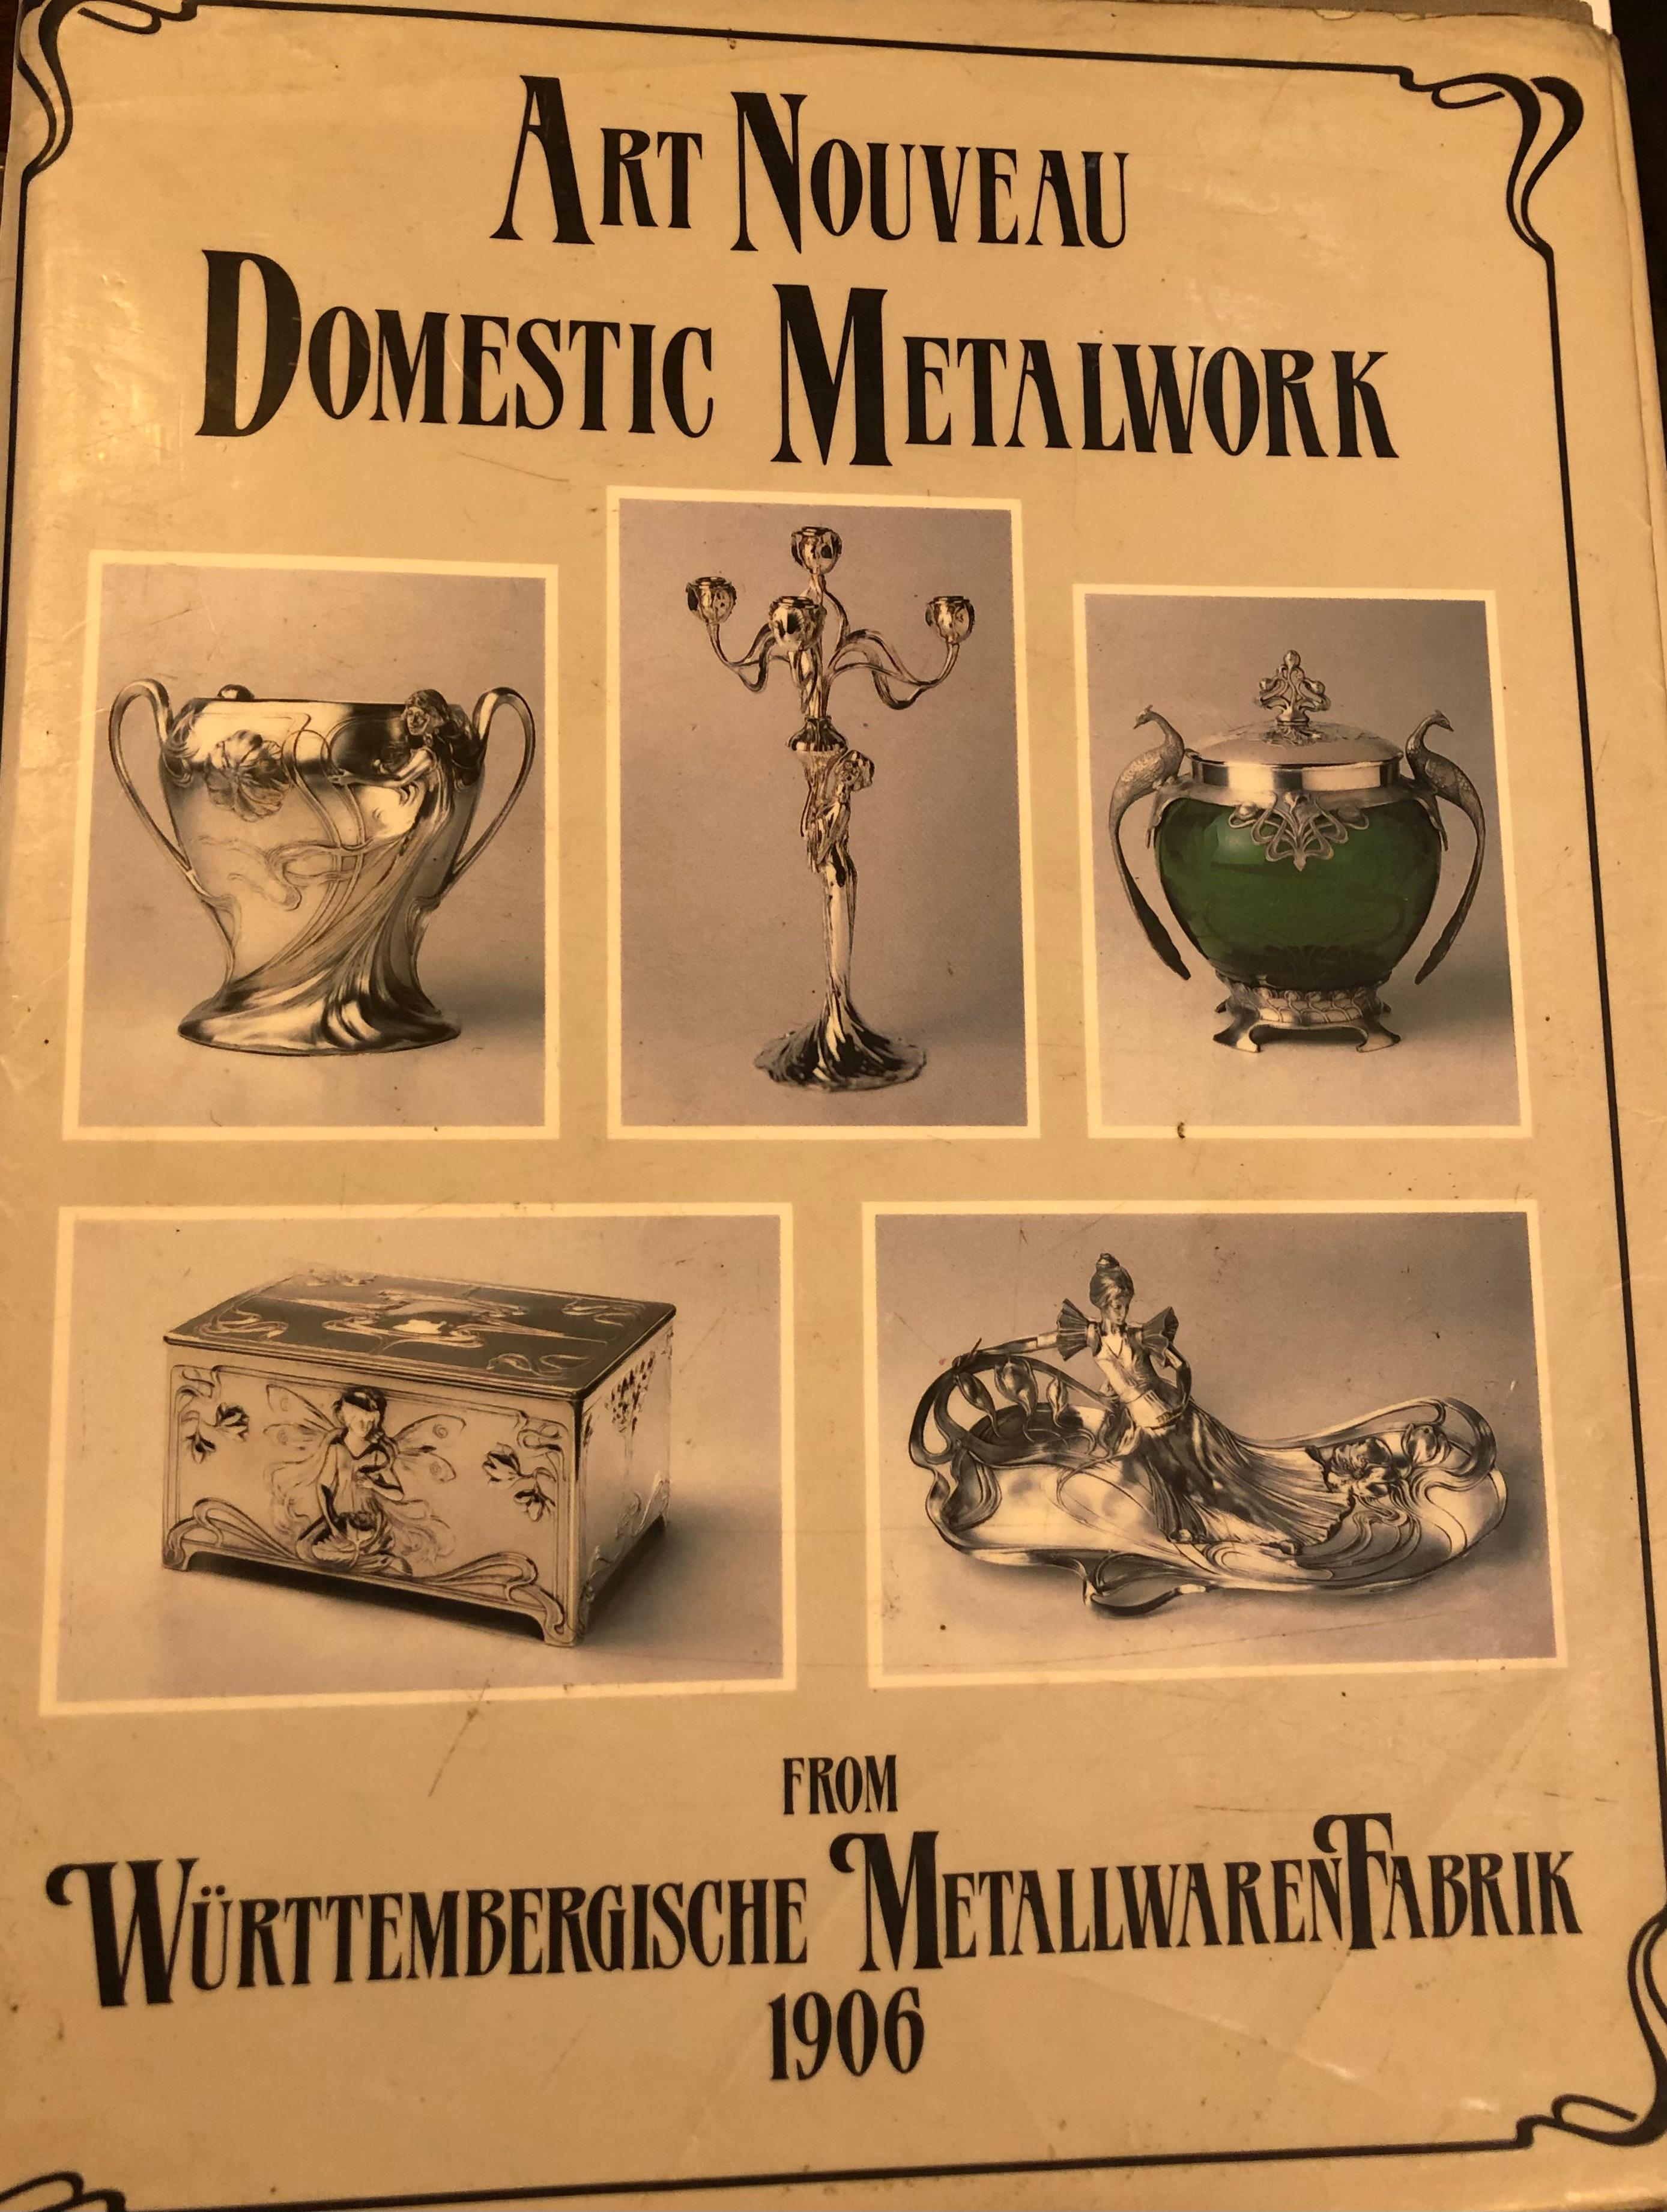 Box, Germany, Jugendstil, Art Nouveau, Liberty, 1890, Sign, WMF For Sale 6